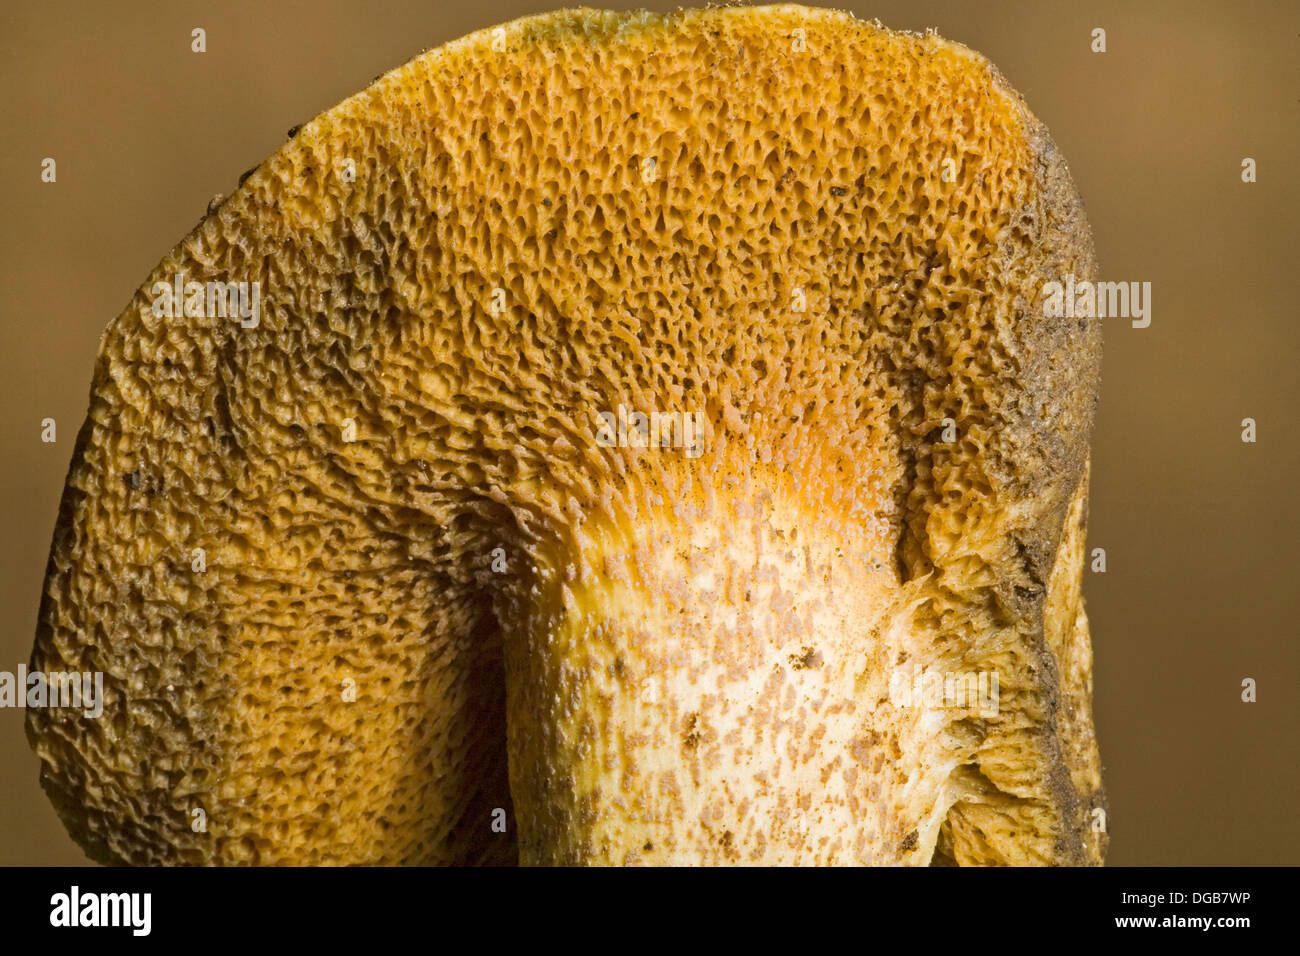 Un champignon sauvage avec des pores ou une éponge au lieu de branchies Banque D'Images